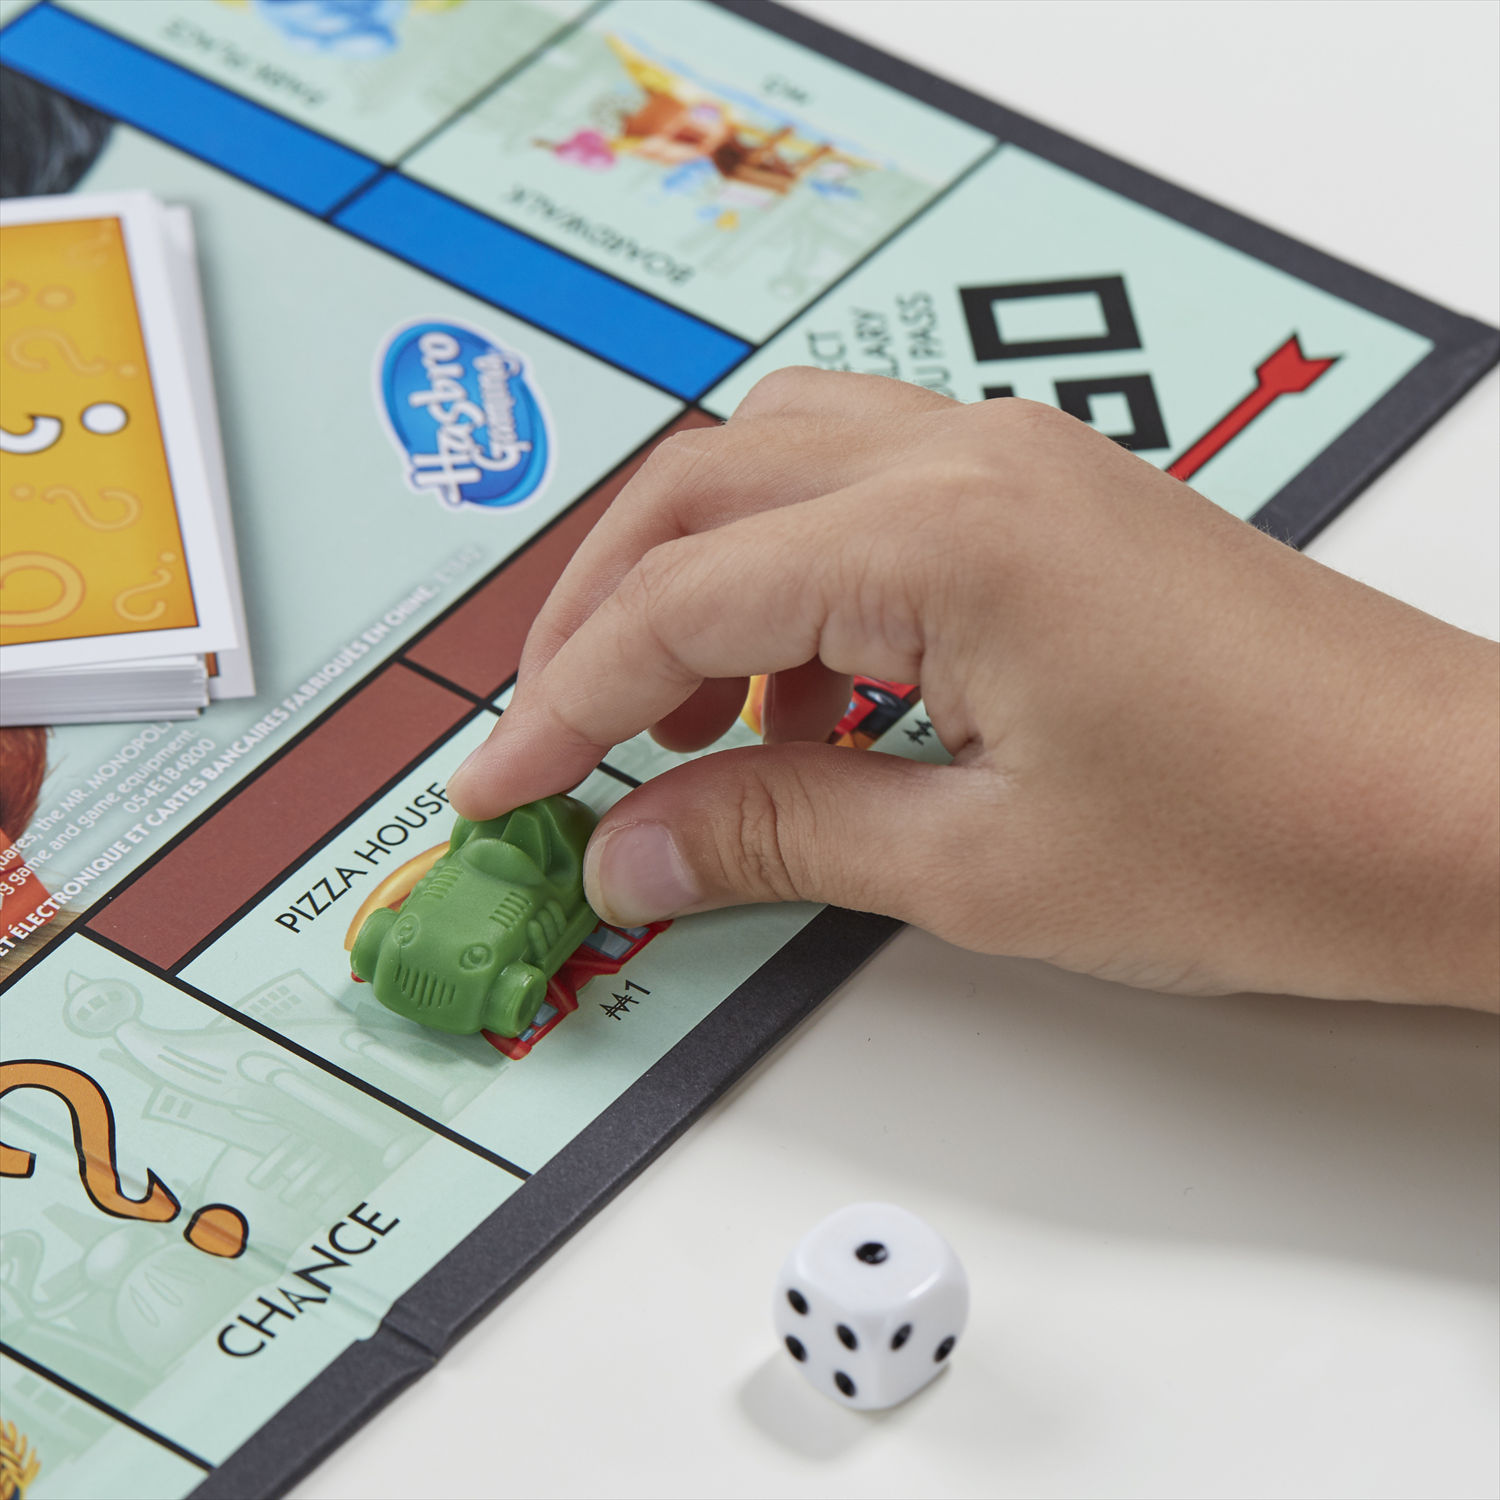 Hasbro Monopoly Junior, Confronta prezzi